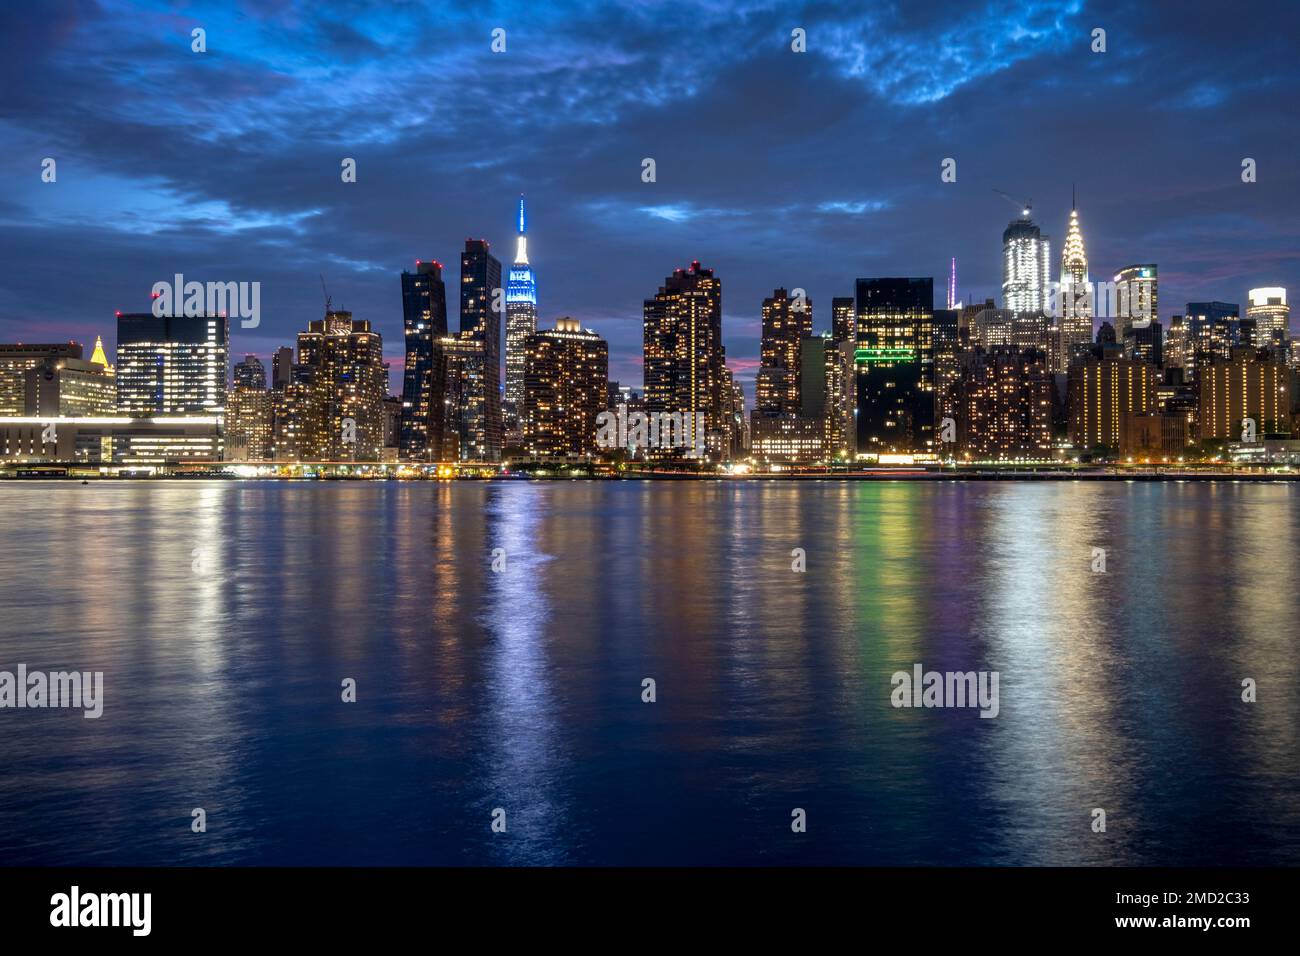 Skyline di Manhattan di notte con l'Empire State Building di fronte all'East River, New York, USA Foto Stock